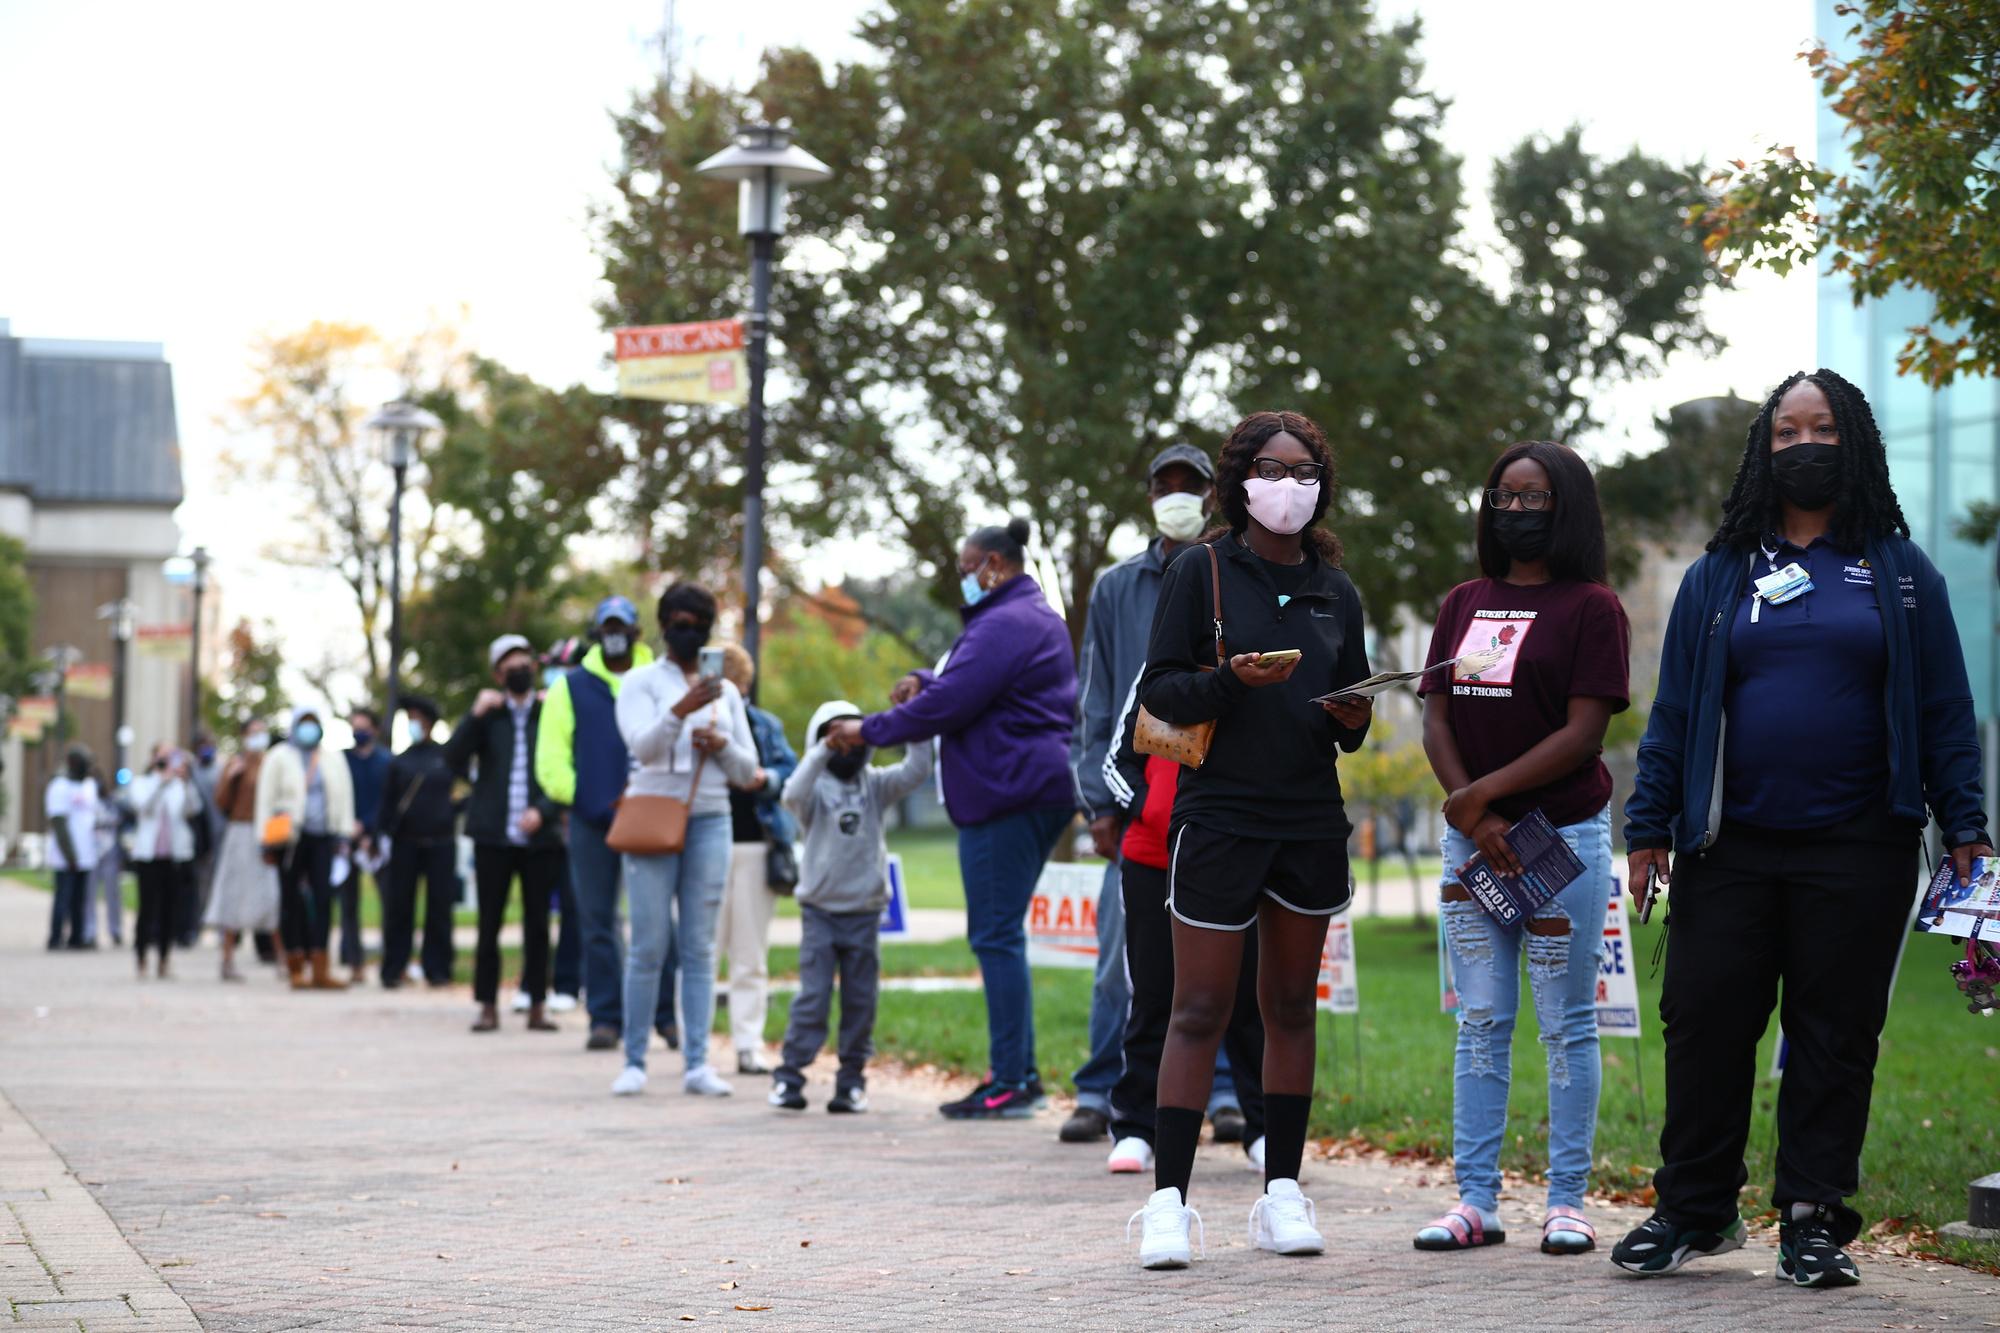 In de afgelopen weken stonden veel kiezers al in de rij om vervroegd te stemmen, zoals hier in Baltimore.